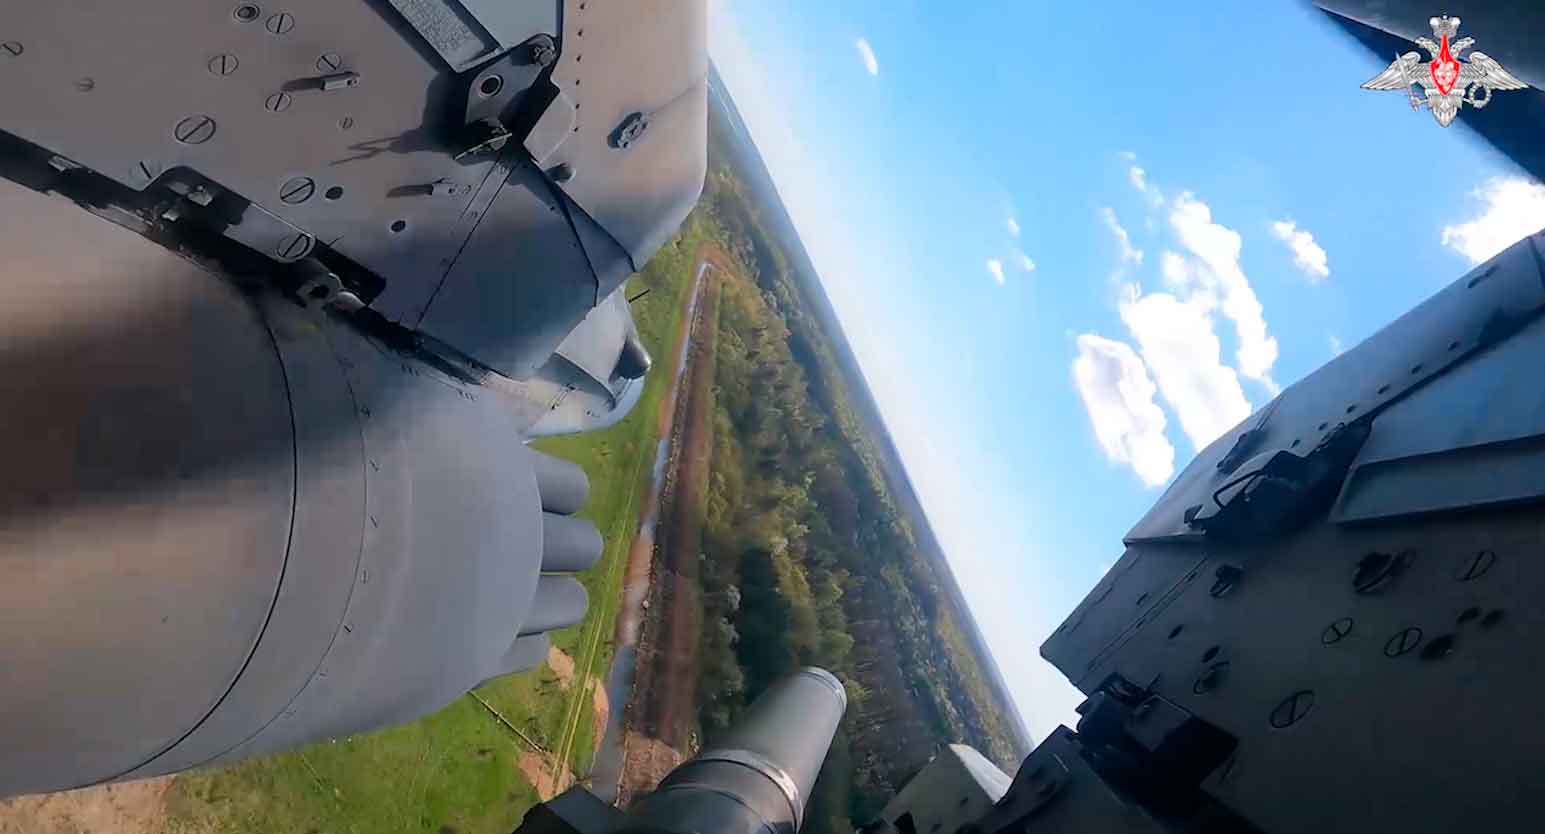 Em mais um vídeo publicado pelo Ministério de Defesa da Rússia nas redes sociais, mostra o poderoso Ka-52 se preparando e atacando posições inimigas na Invsão Russa da Ucrânia